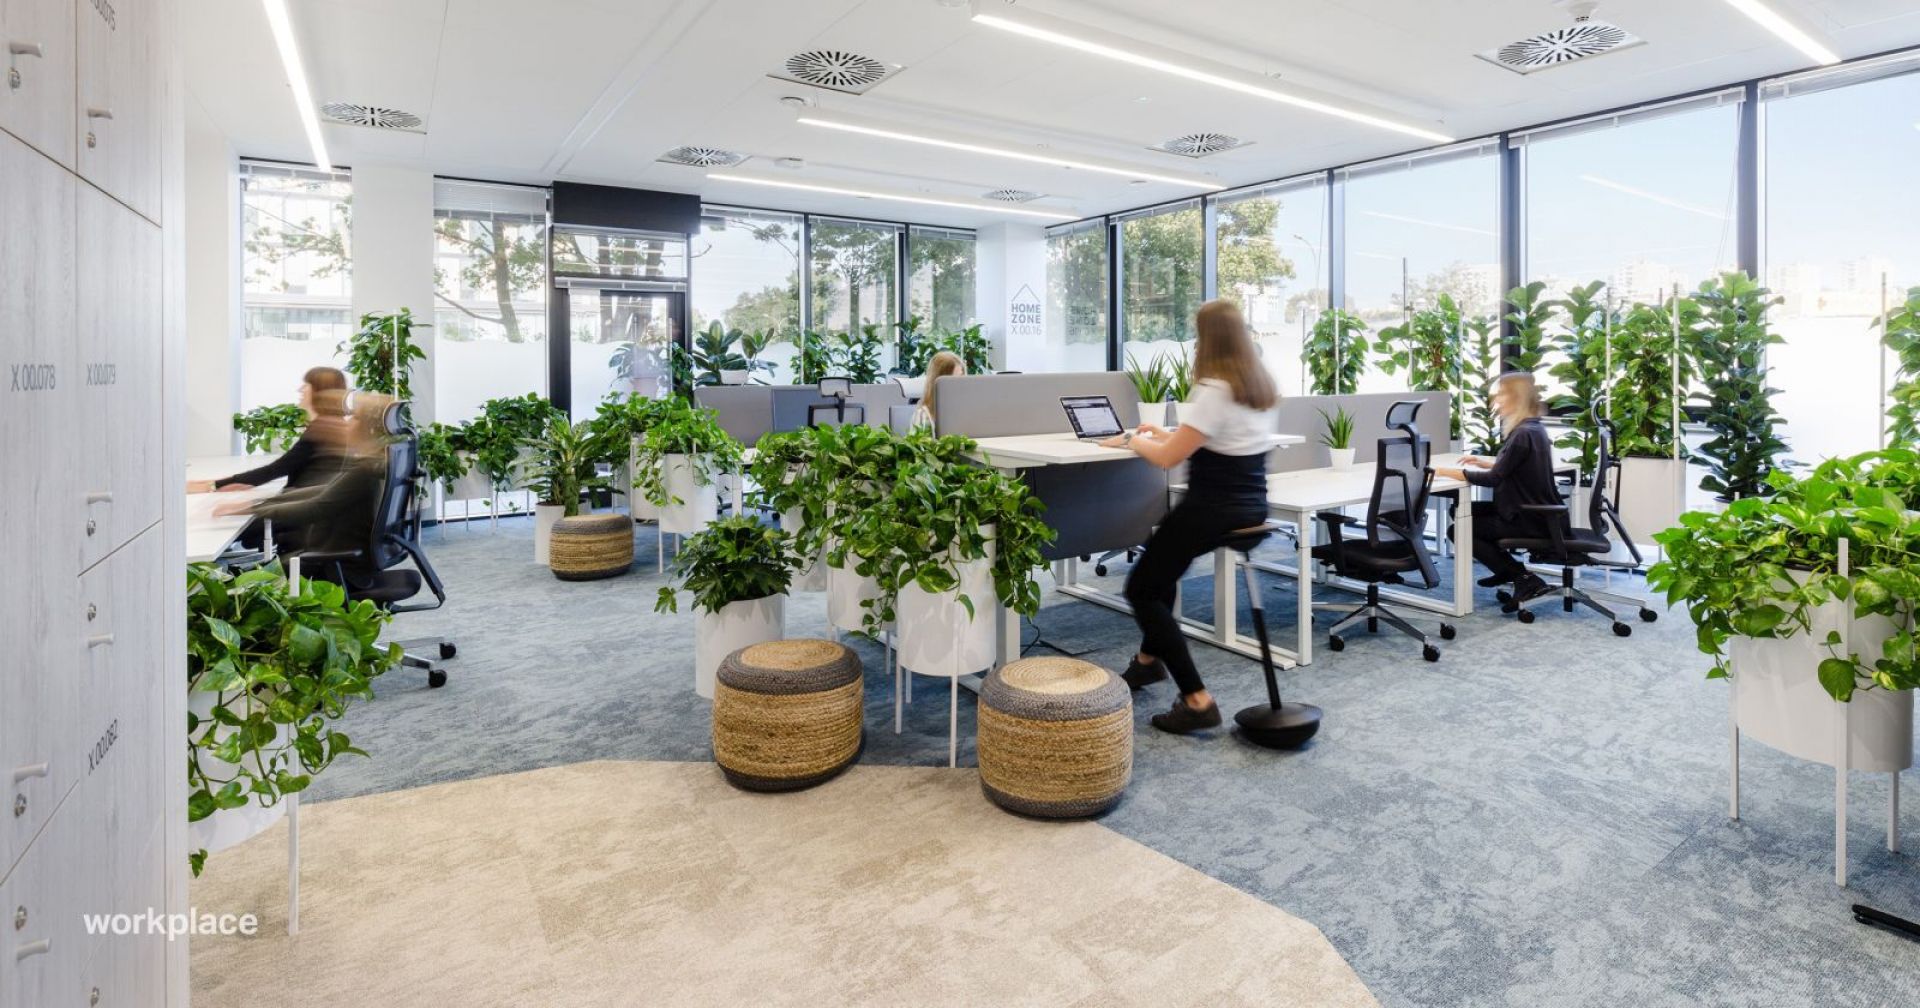 Biuro firmy Nordea zostało zaprojektowane zgodnie z zasadami Biophilic Design. Fot. Workplace Solutions